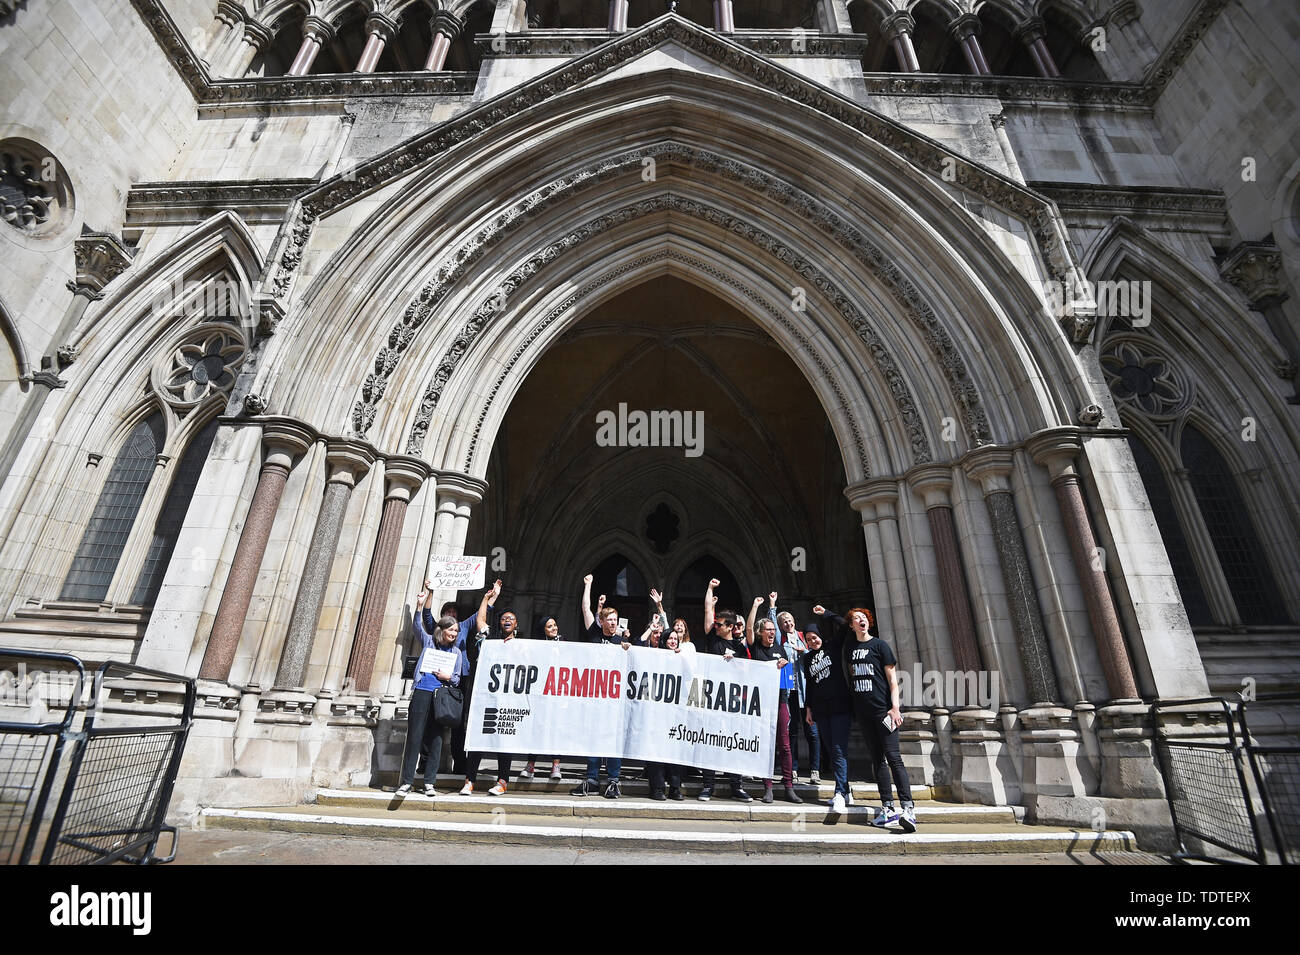 Die demonstranten Feiern außerhalb der Royal Courts of Justice, London, nachdem er ein Wahrzeichen rechtliche Herausforderung an das Berufungsgericht über die Entscheidung der Regierung, um weiterhin die Waffenverkäufe an Saudi-Arabien ermöglichen. Stockfoto